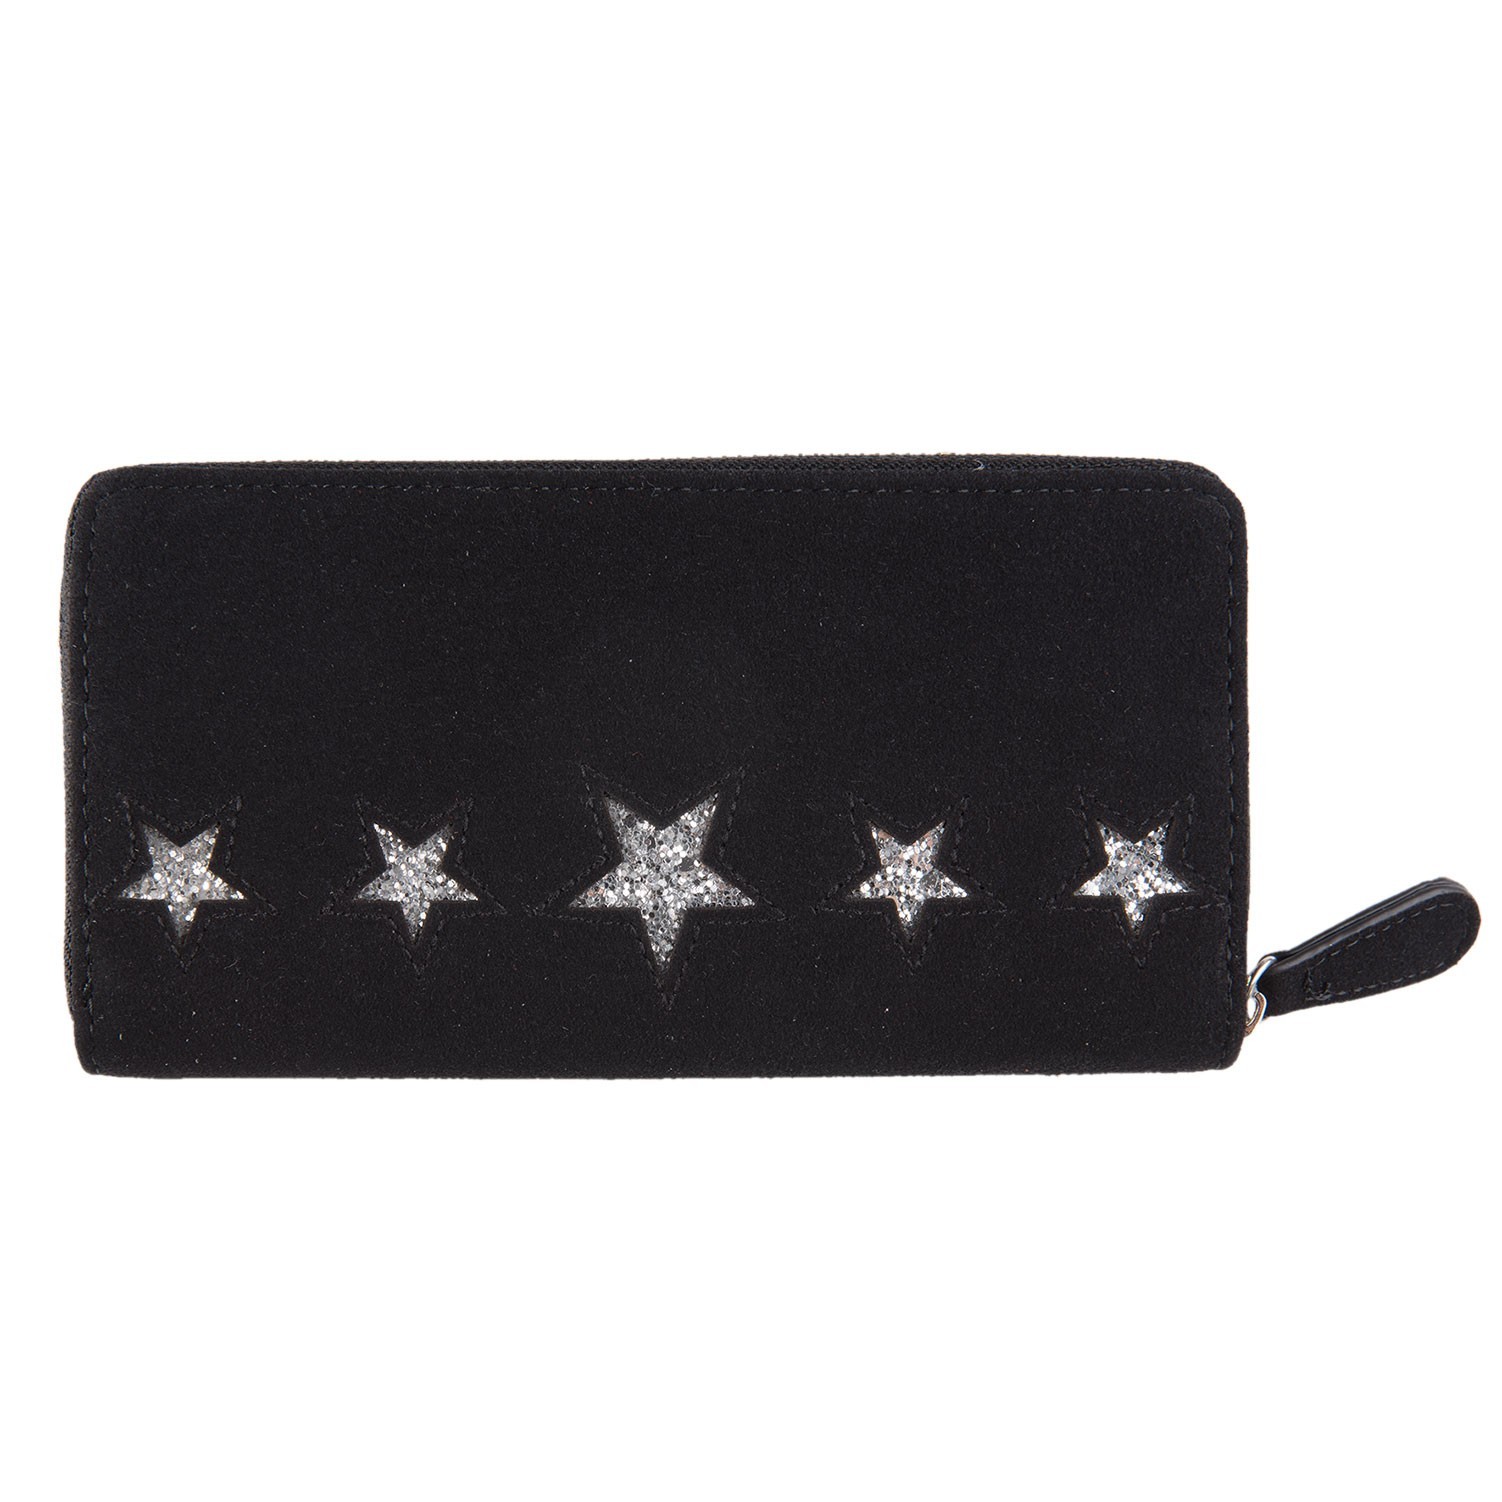 Černá peněženka s hvězdami – 19*10 cm